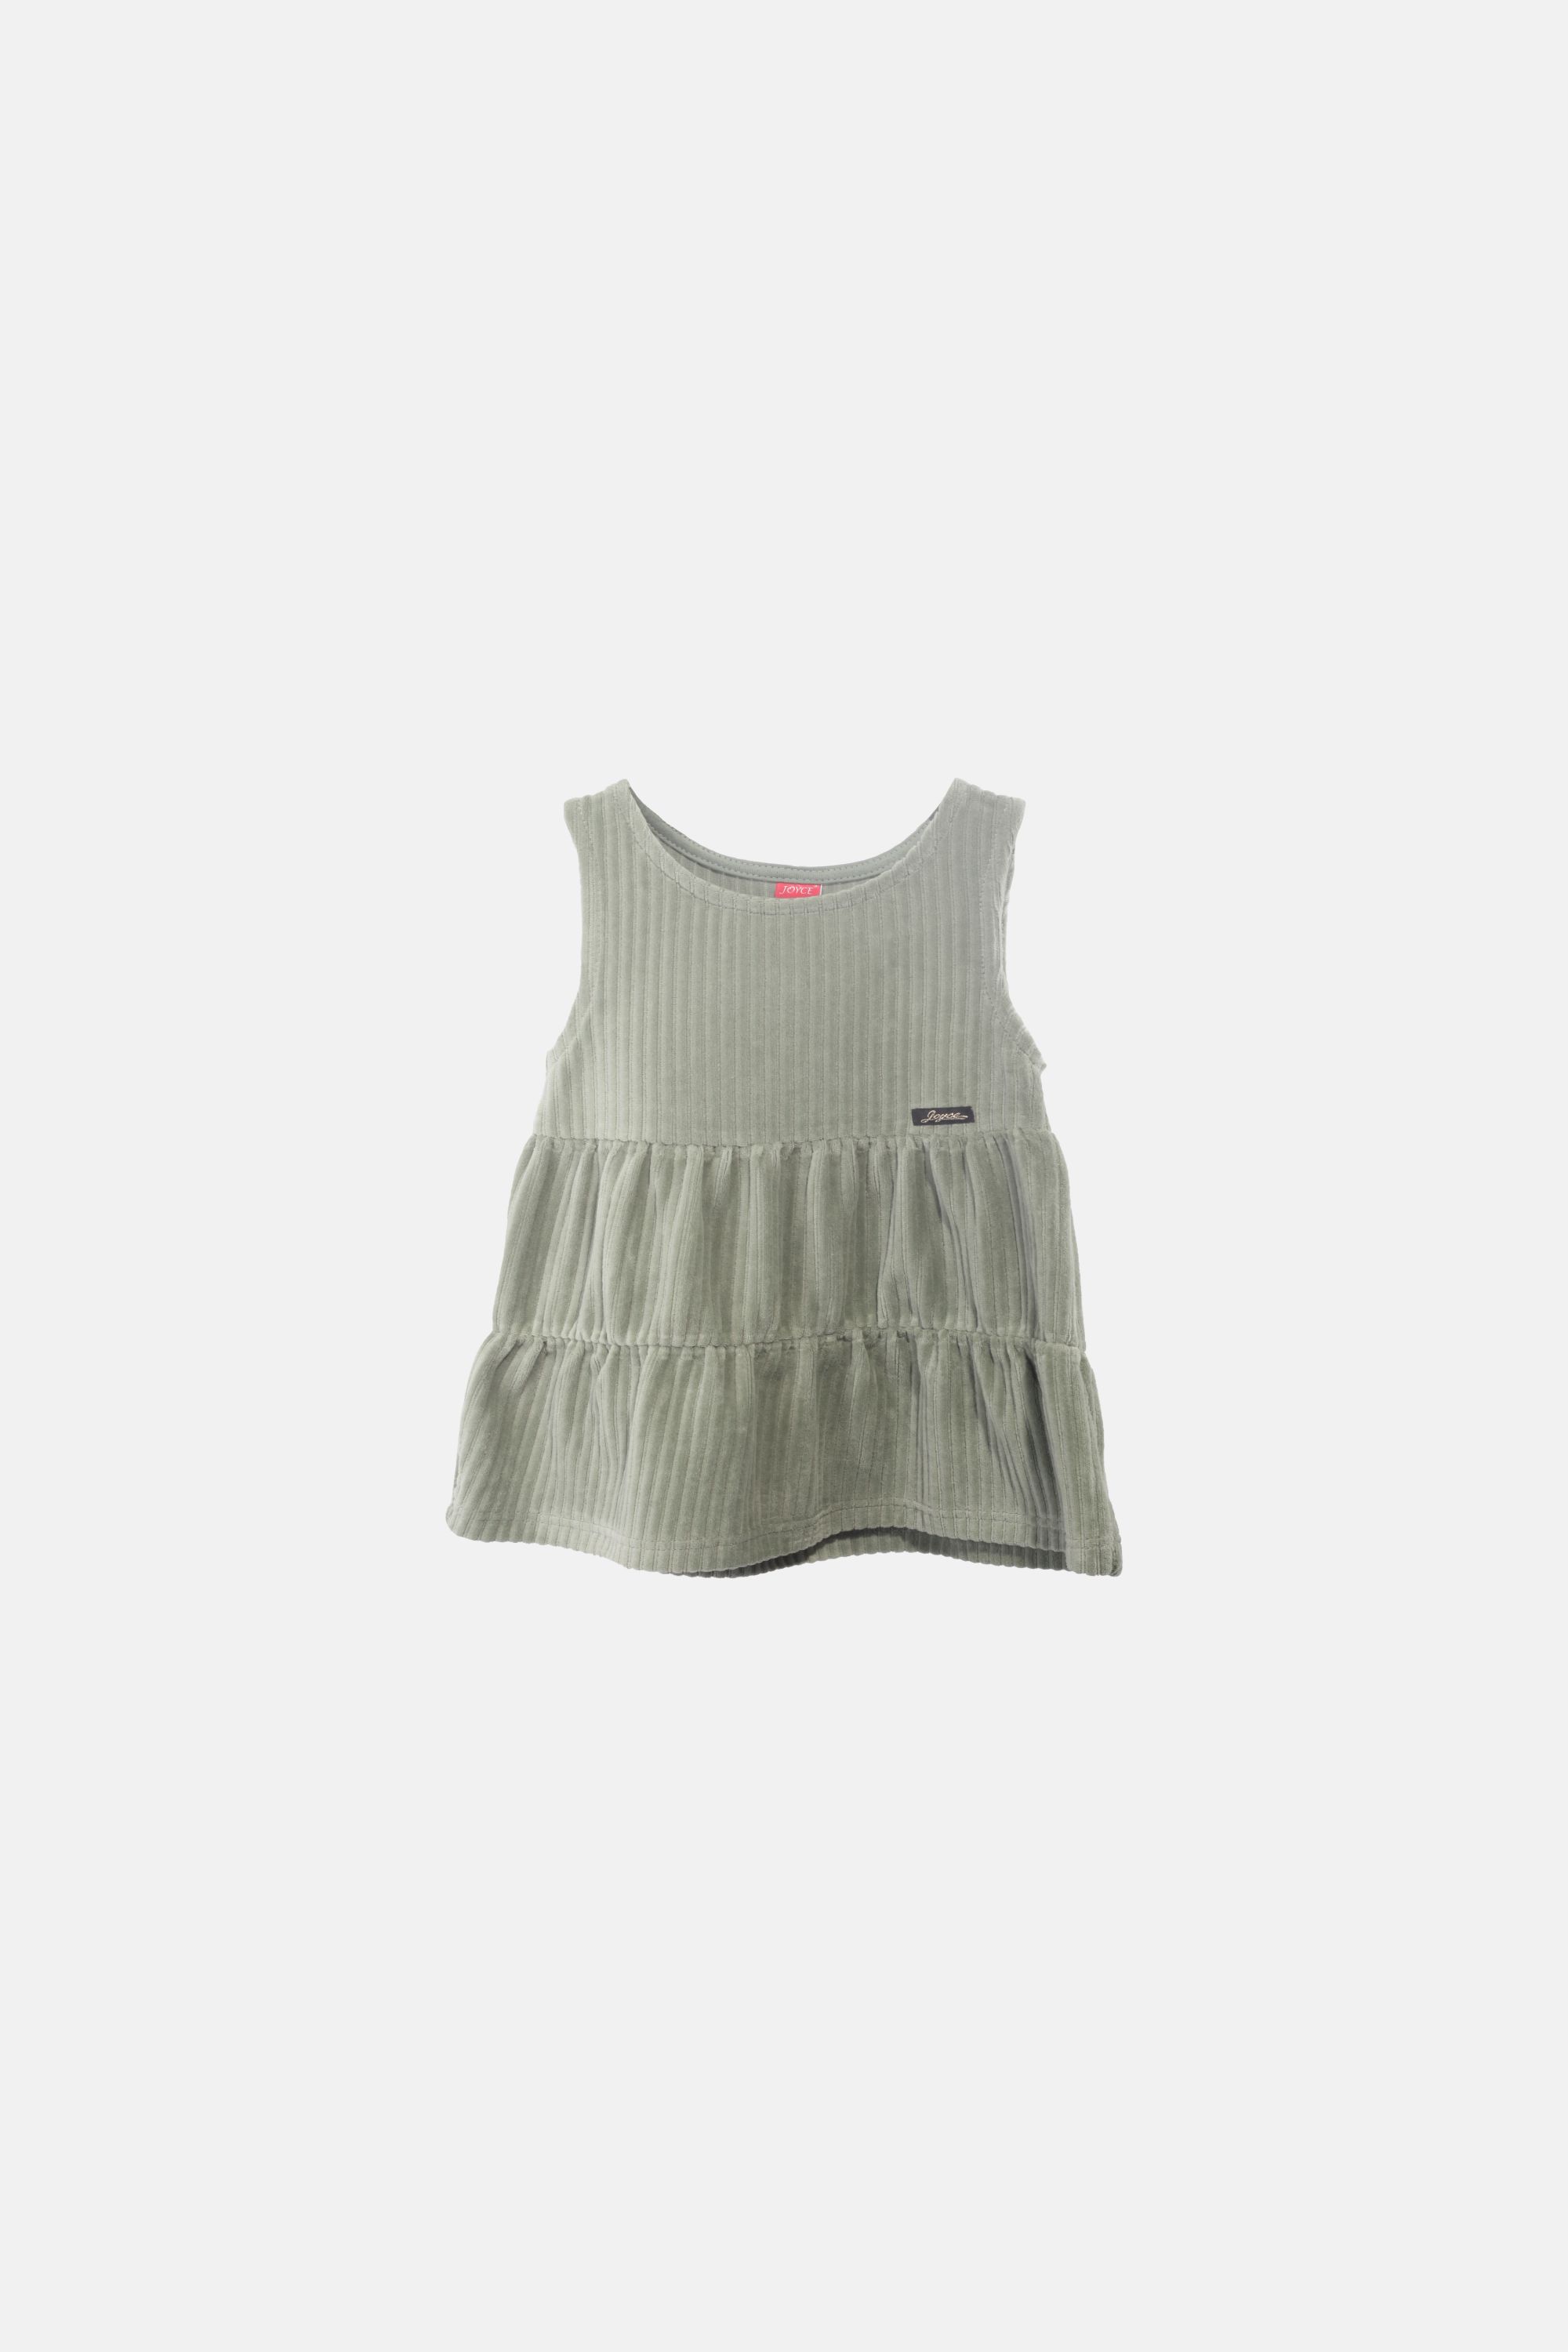 Dívčí velurové šaty "SARAFAN DRESS"/Šedá, růžová, zelená, hnědá Barva: Zelená, Velikost: vel. 2 (86/92 cm)